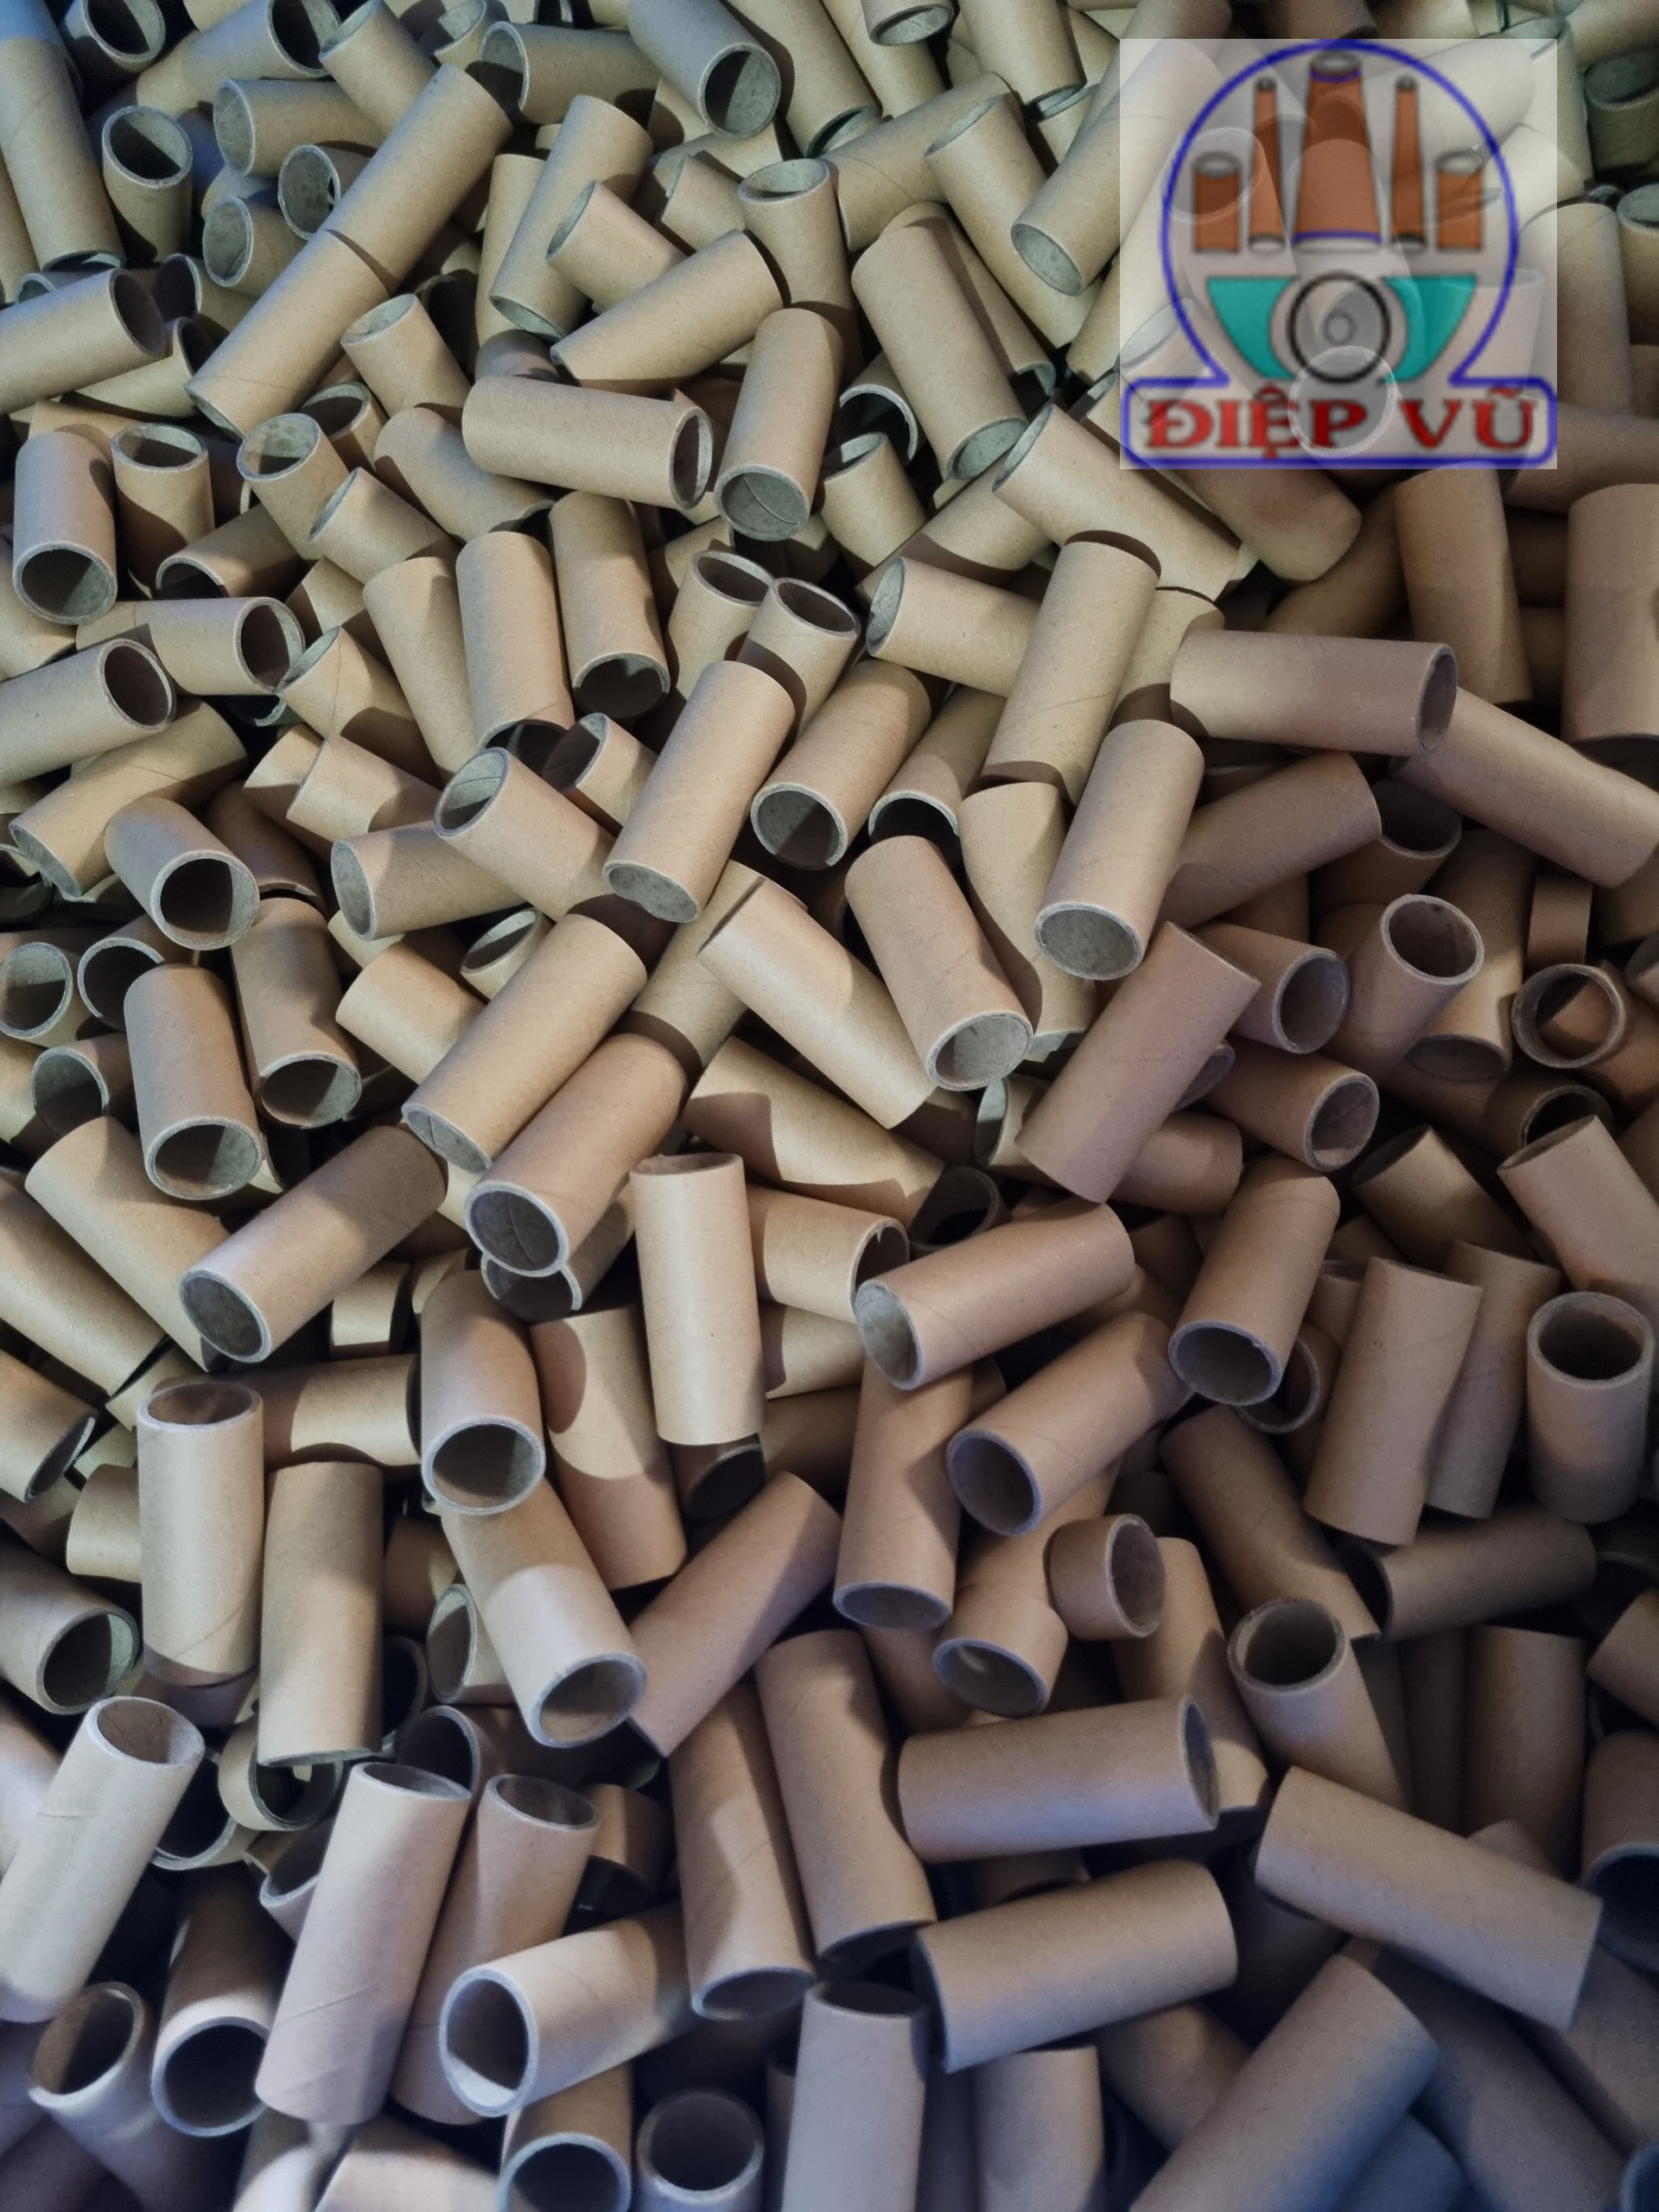 Ống giấy công nghiệp - Sản Xuất ống Lõi Giấy Hồ Chí Minh - Công Ty TNHH Sản Xuất Thương Mại Điệp Vũ